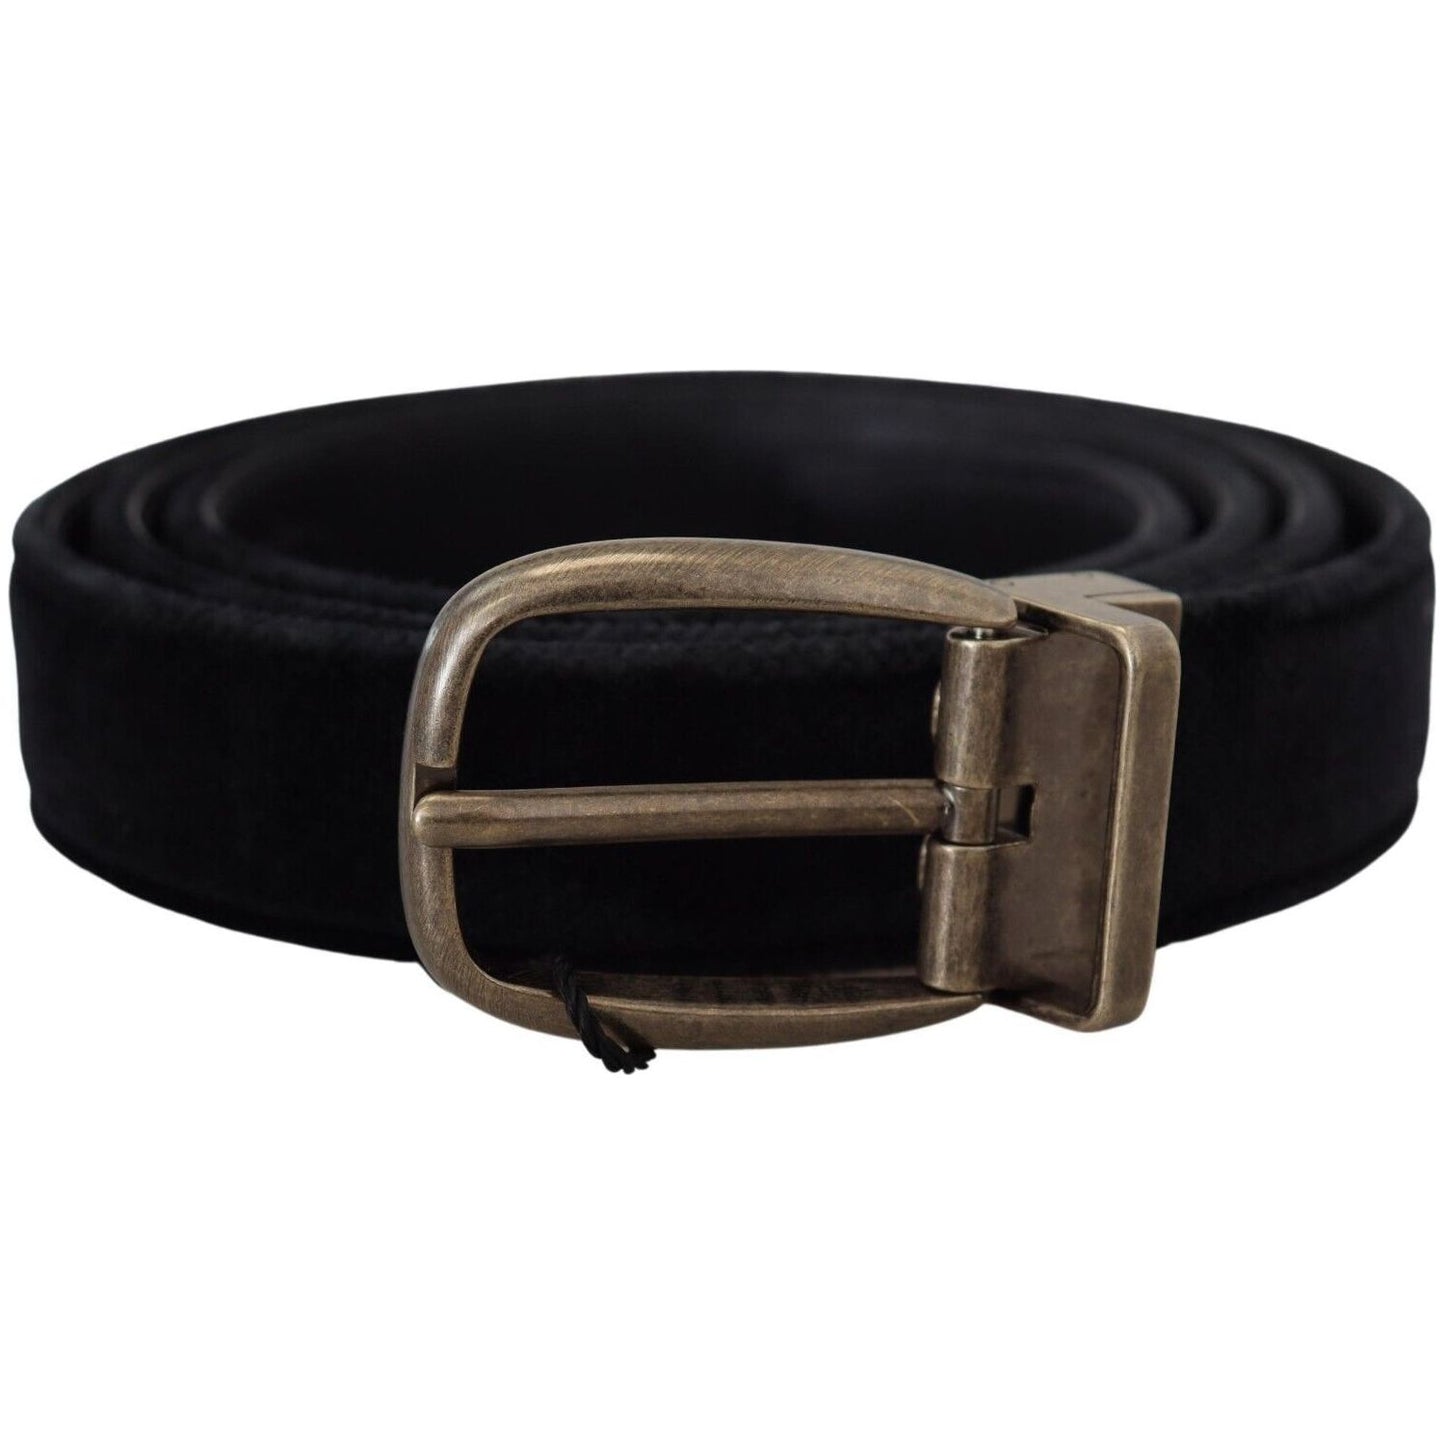 Dolce & Gabbana Elegant Black Leather Belt black-velvet-leather-antique-metal-buckle